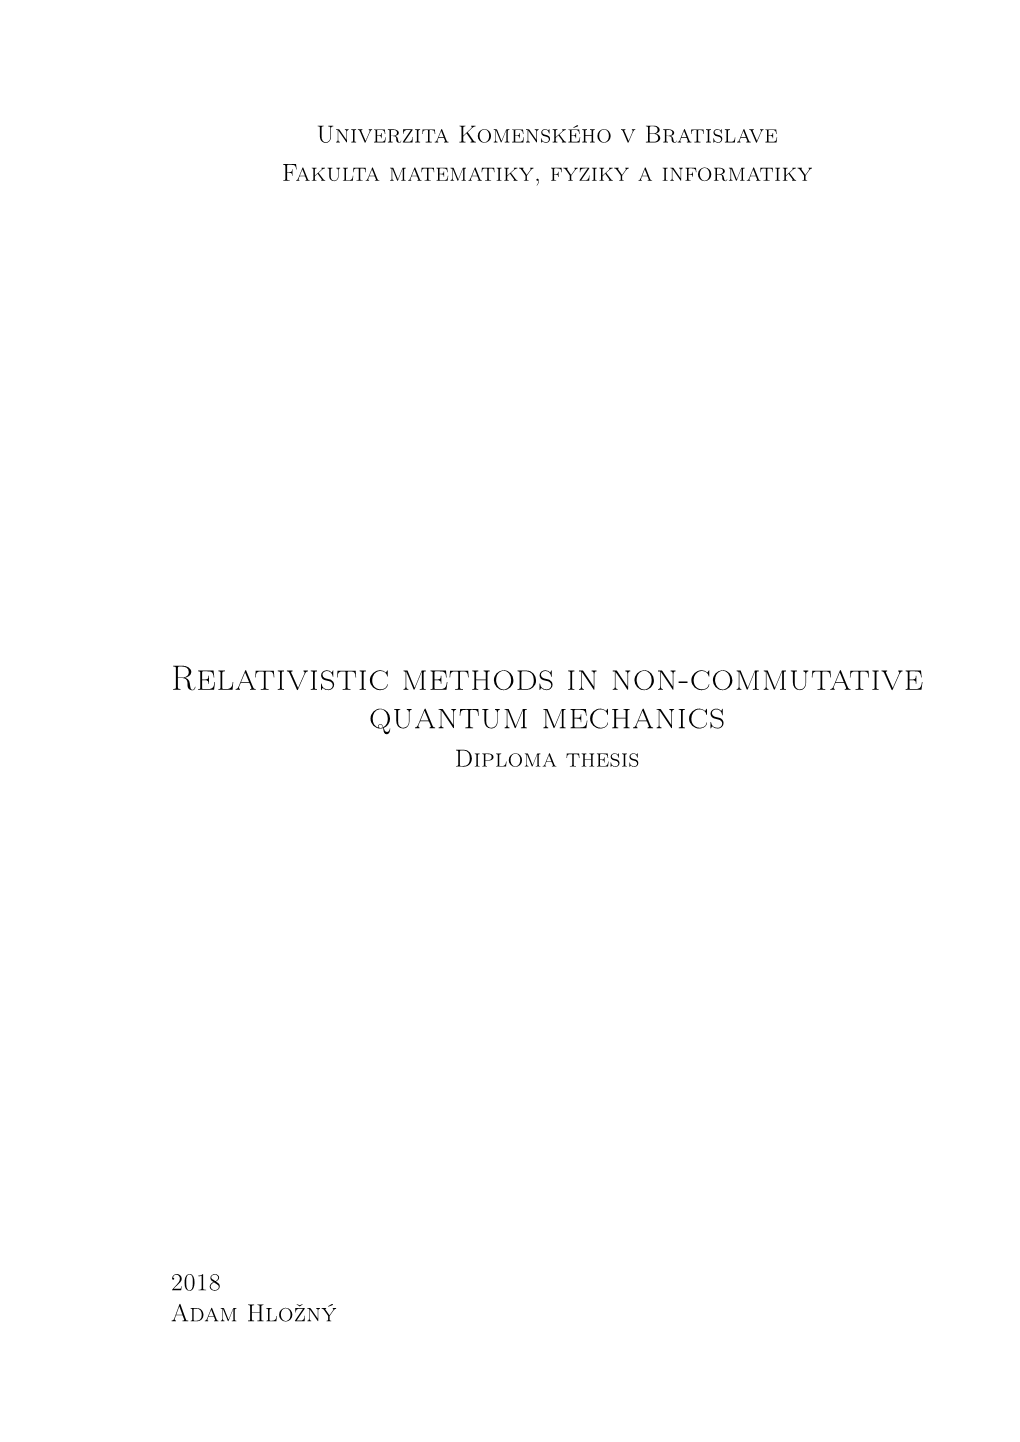 Relativistic Methods in Non-Commutative Quantum Mechanics Diploma Thesis